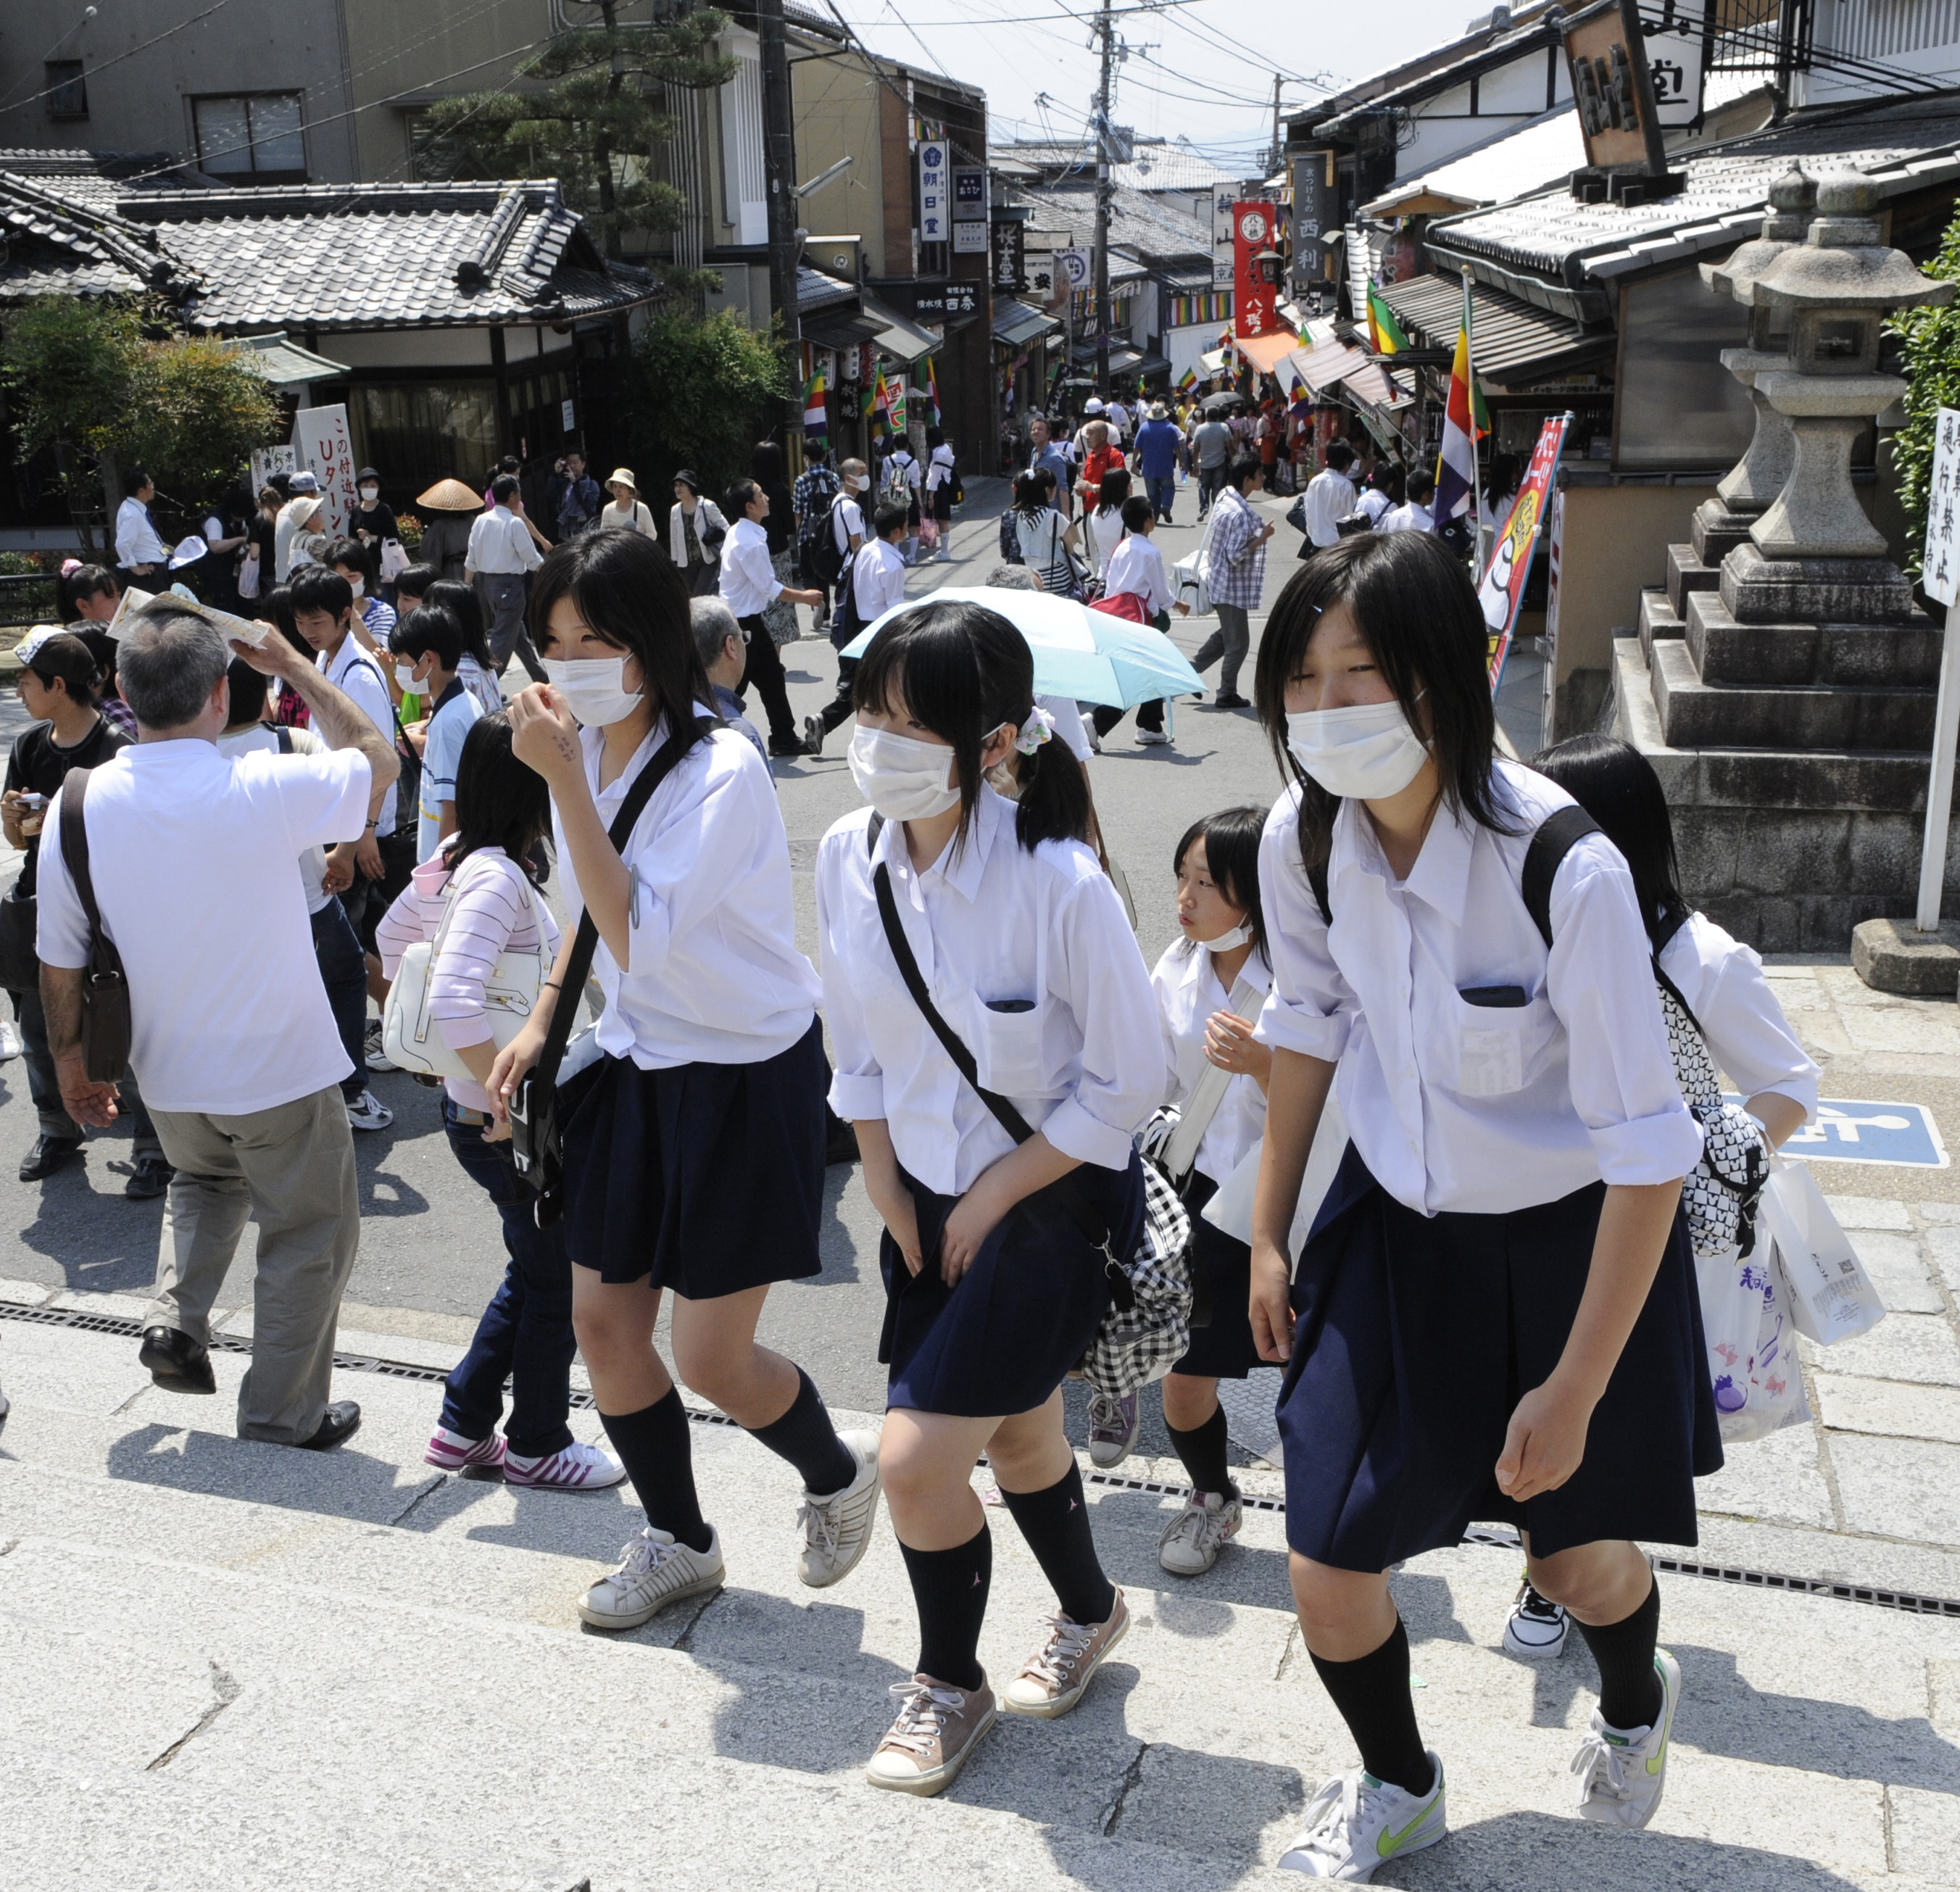 Japanese Schoolgirls Panties